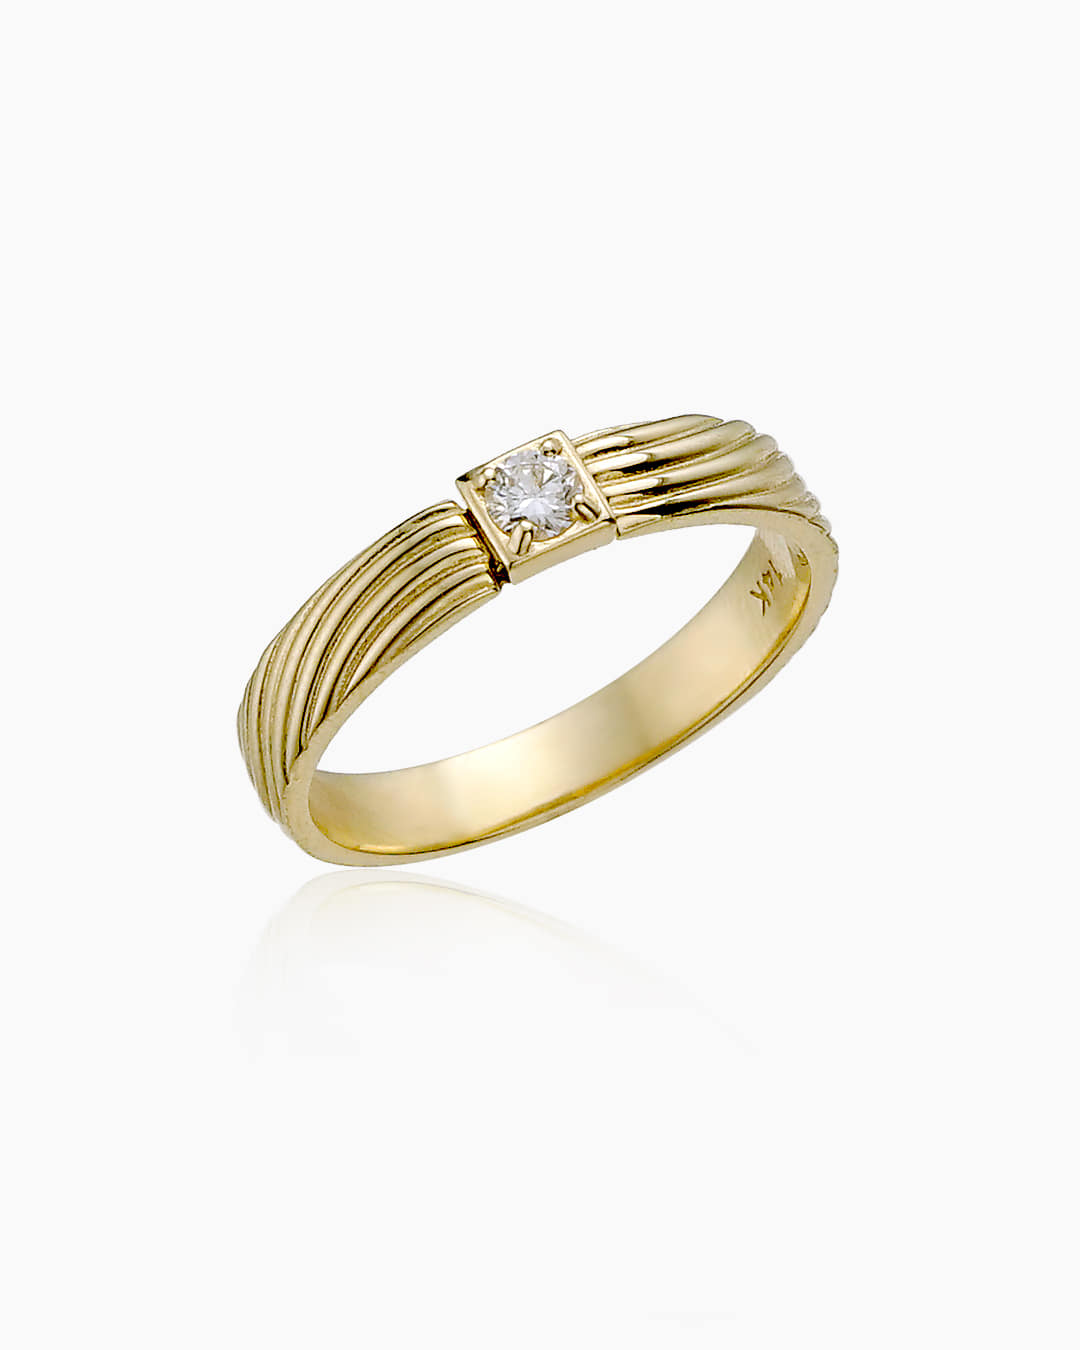 메인에 다이아몬드가 세팅된 반지이다.